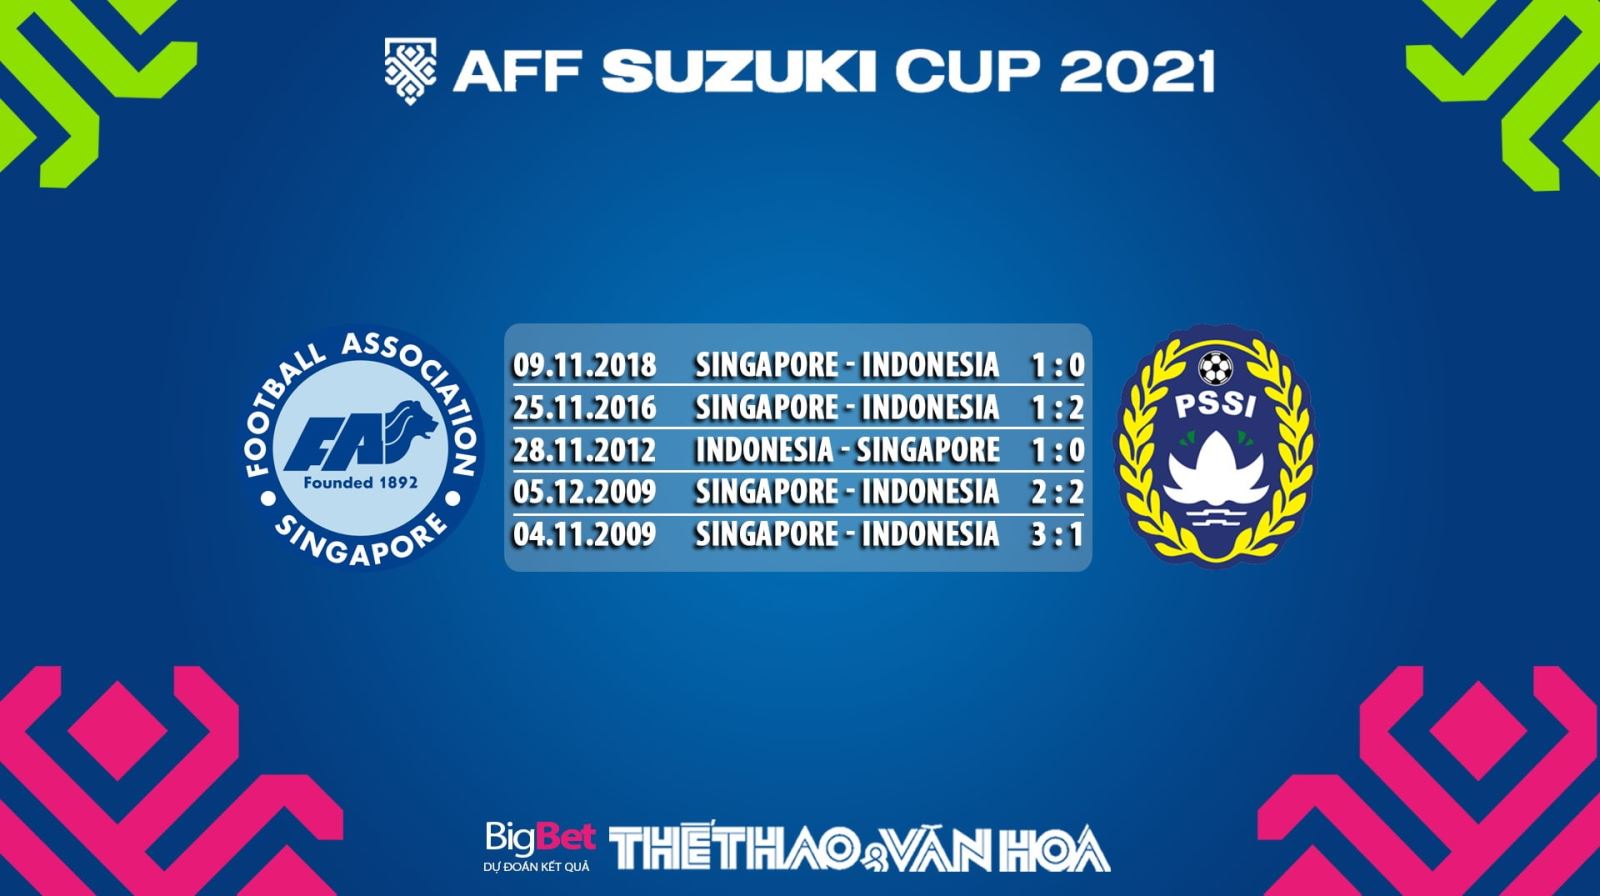 Singapore vs Indonesia, kèo nhà cái, soi kèo Singapore vs Indonesia, nhận định bóng đá, Singapore, Indonesia, keo nha cai, dự đoán bóng đá, AFF Cup 2021